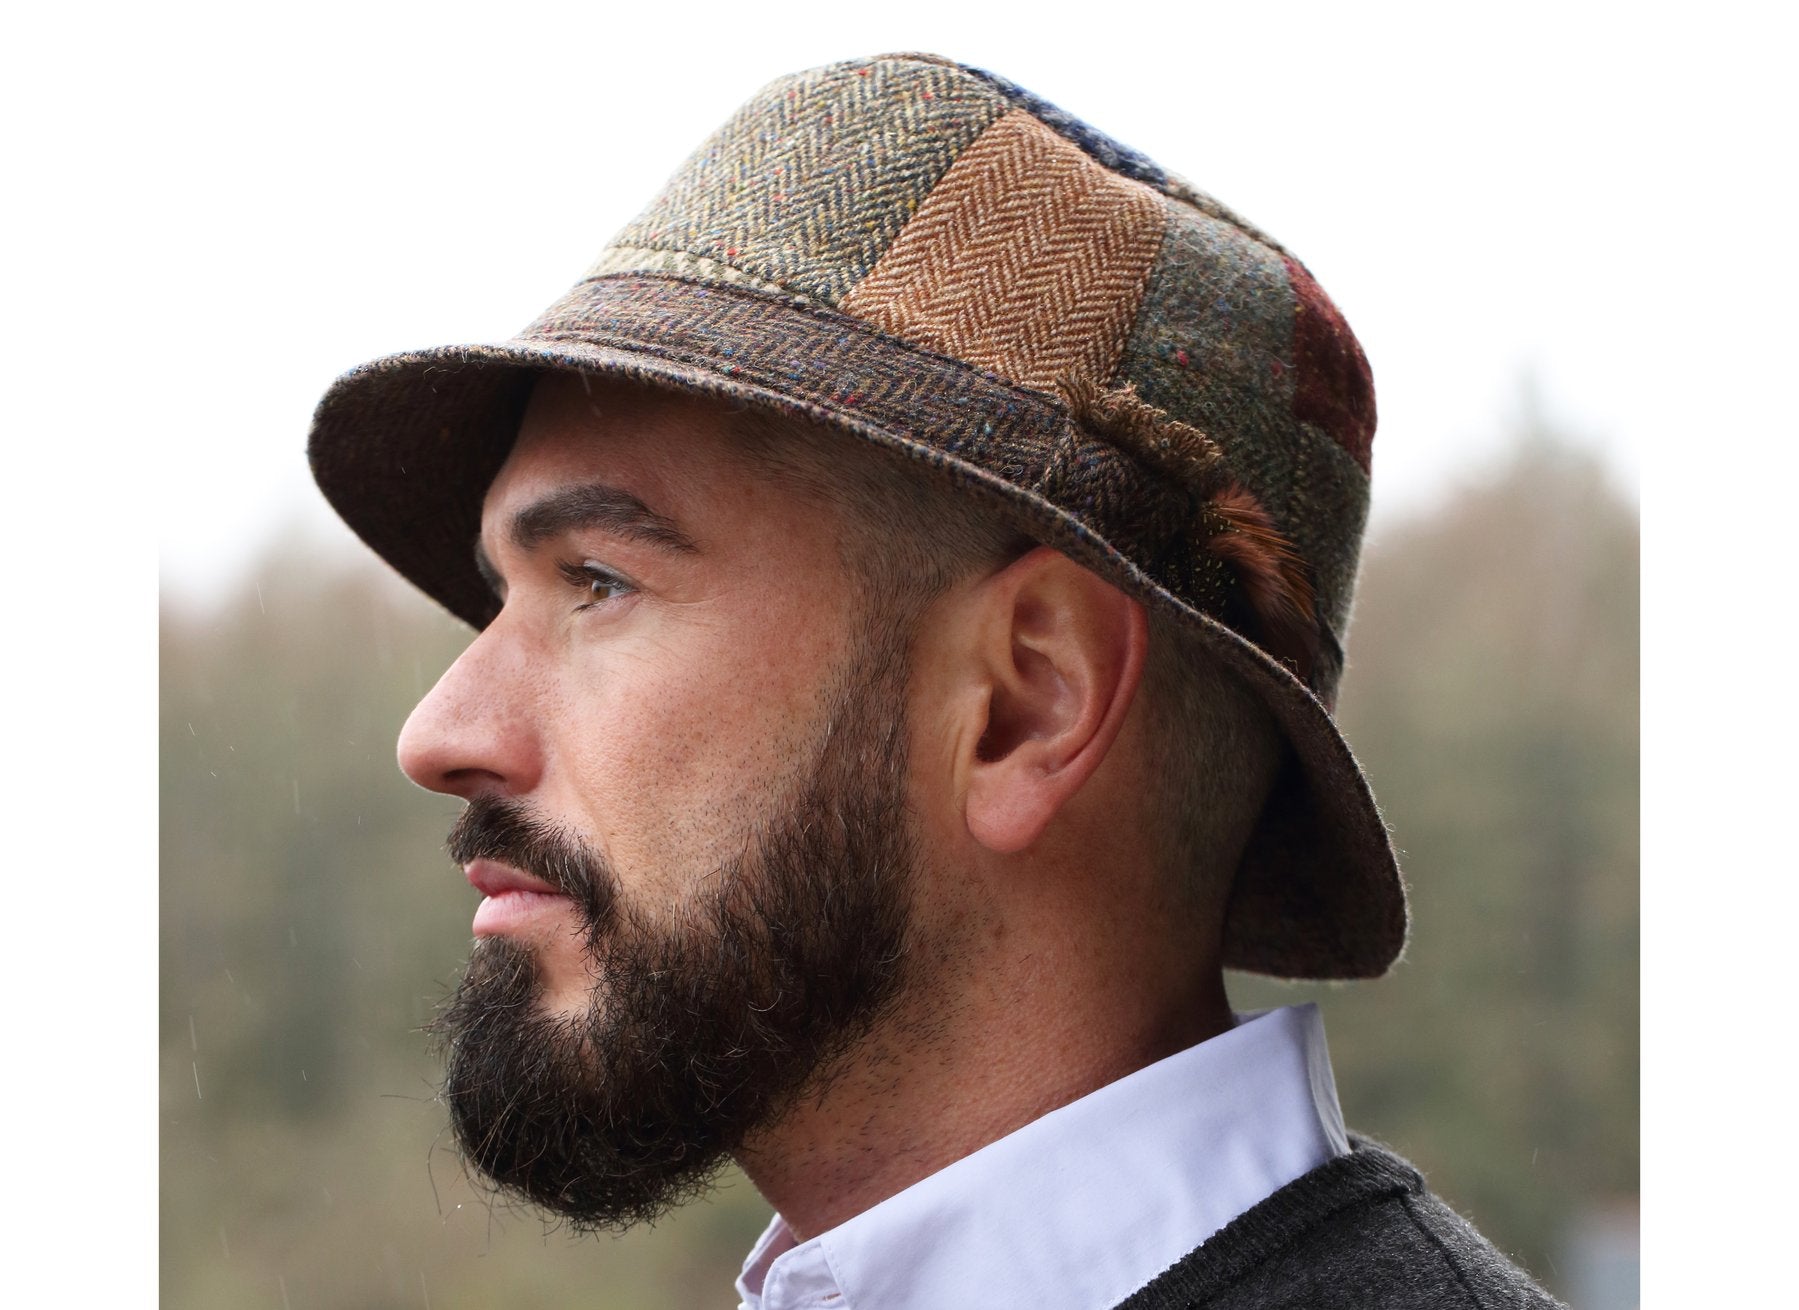 Irish Walking Hat - Patchwork Tweed